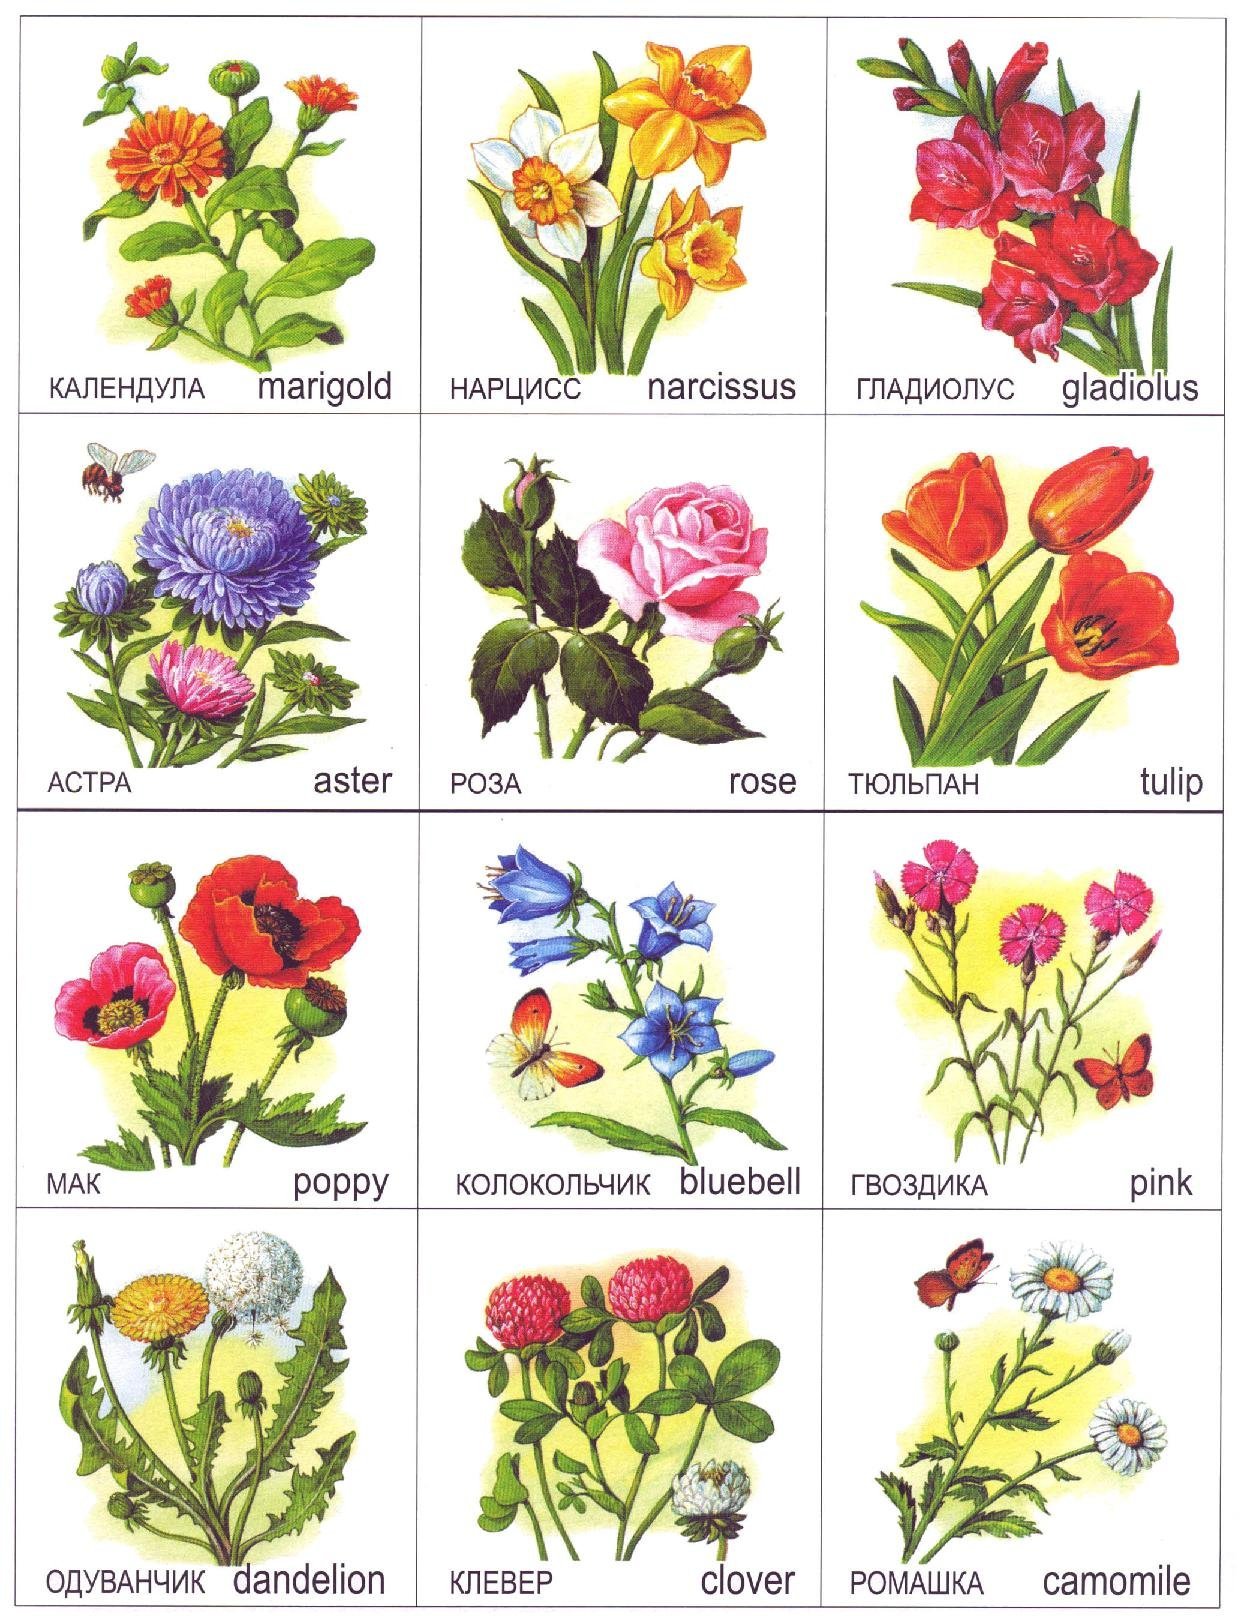 Каталог однолетних и двулетних садовых цветов с фото, названиями